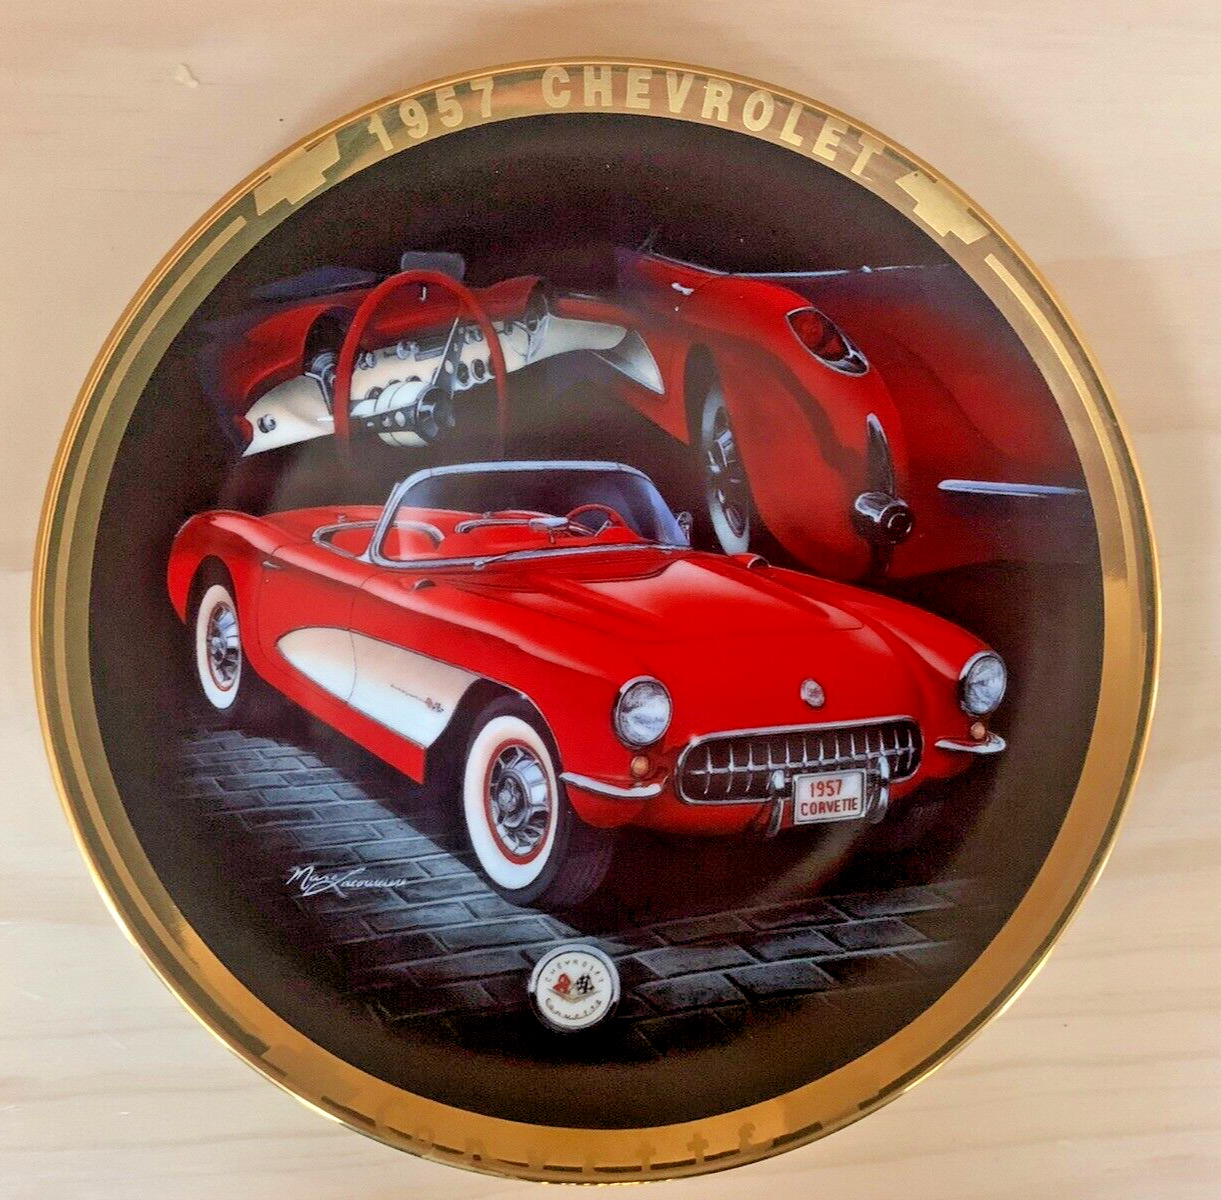 Hamilton Collection - 1957 Corvette Plate by Marc Lacourciere #0490B